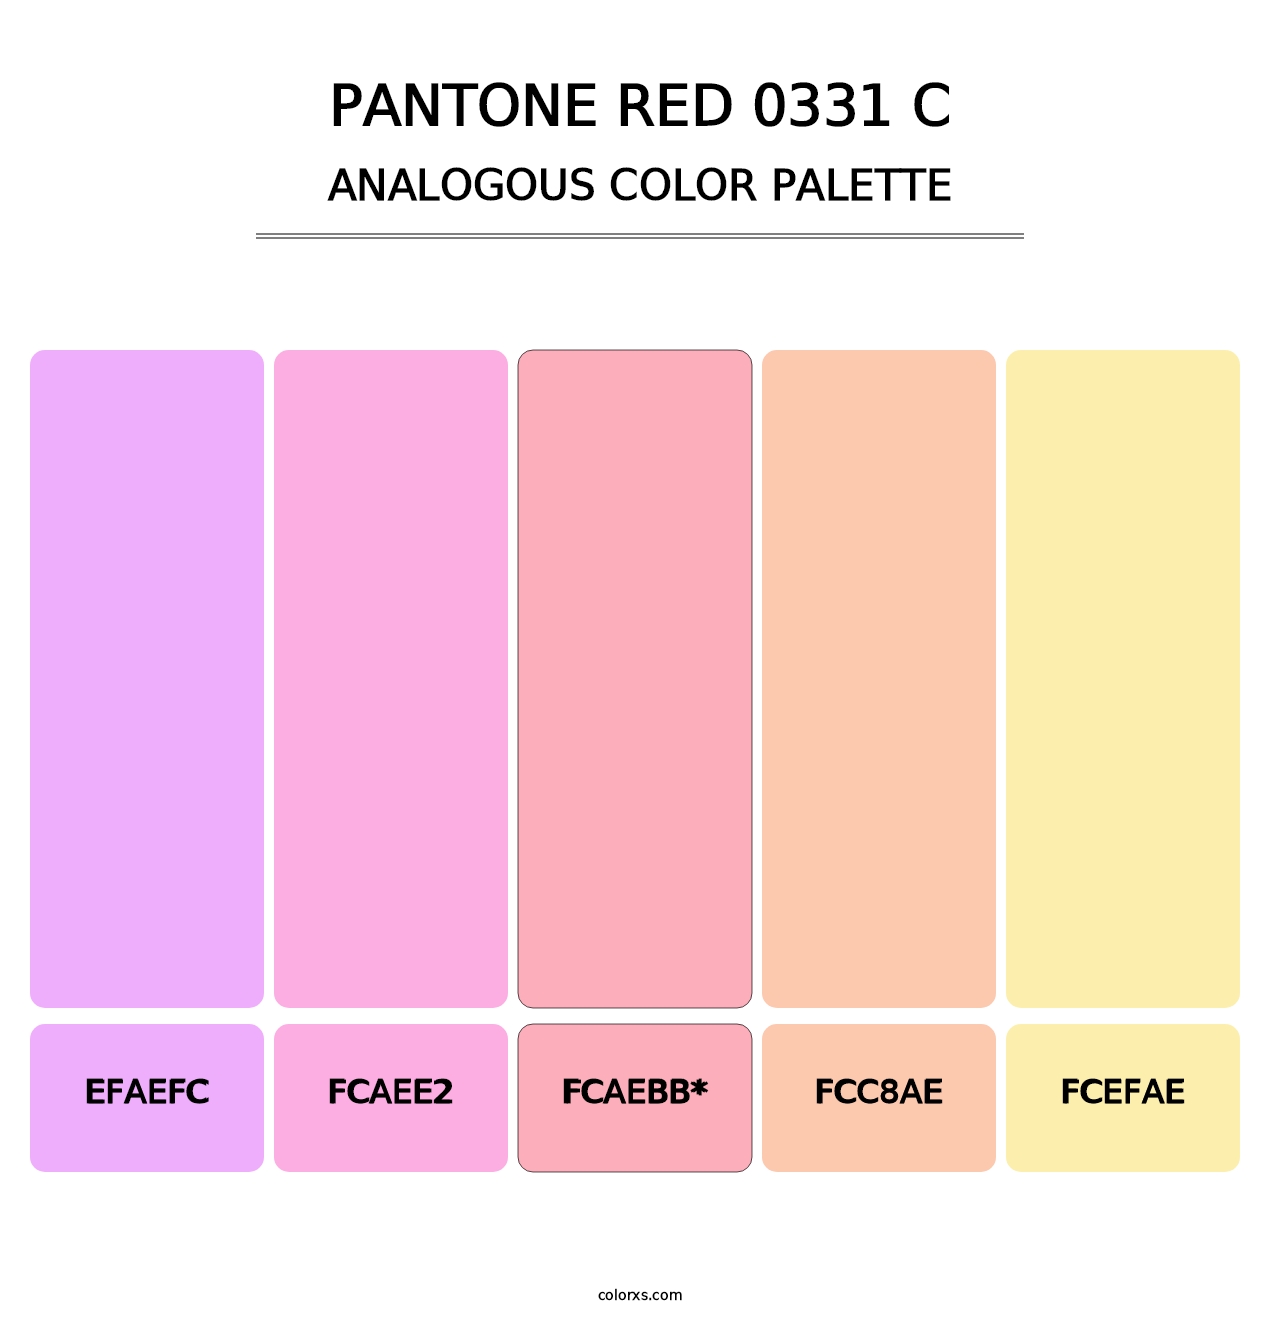 PANTONE Red 0331 C - Analogous Color Palette